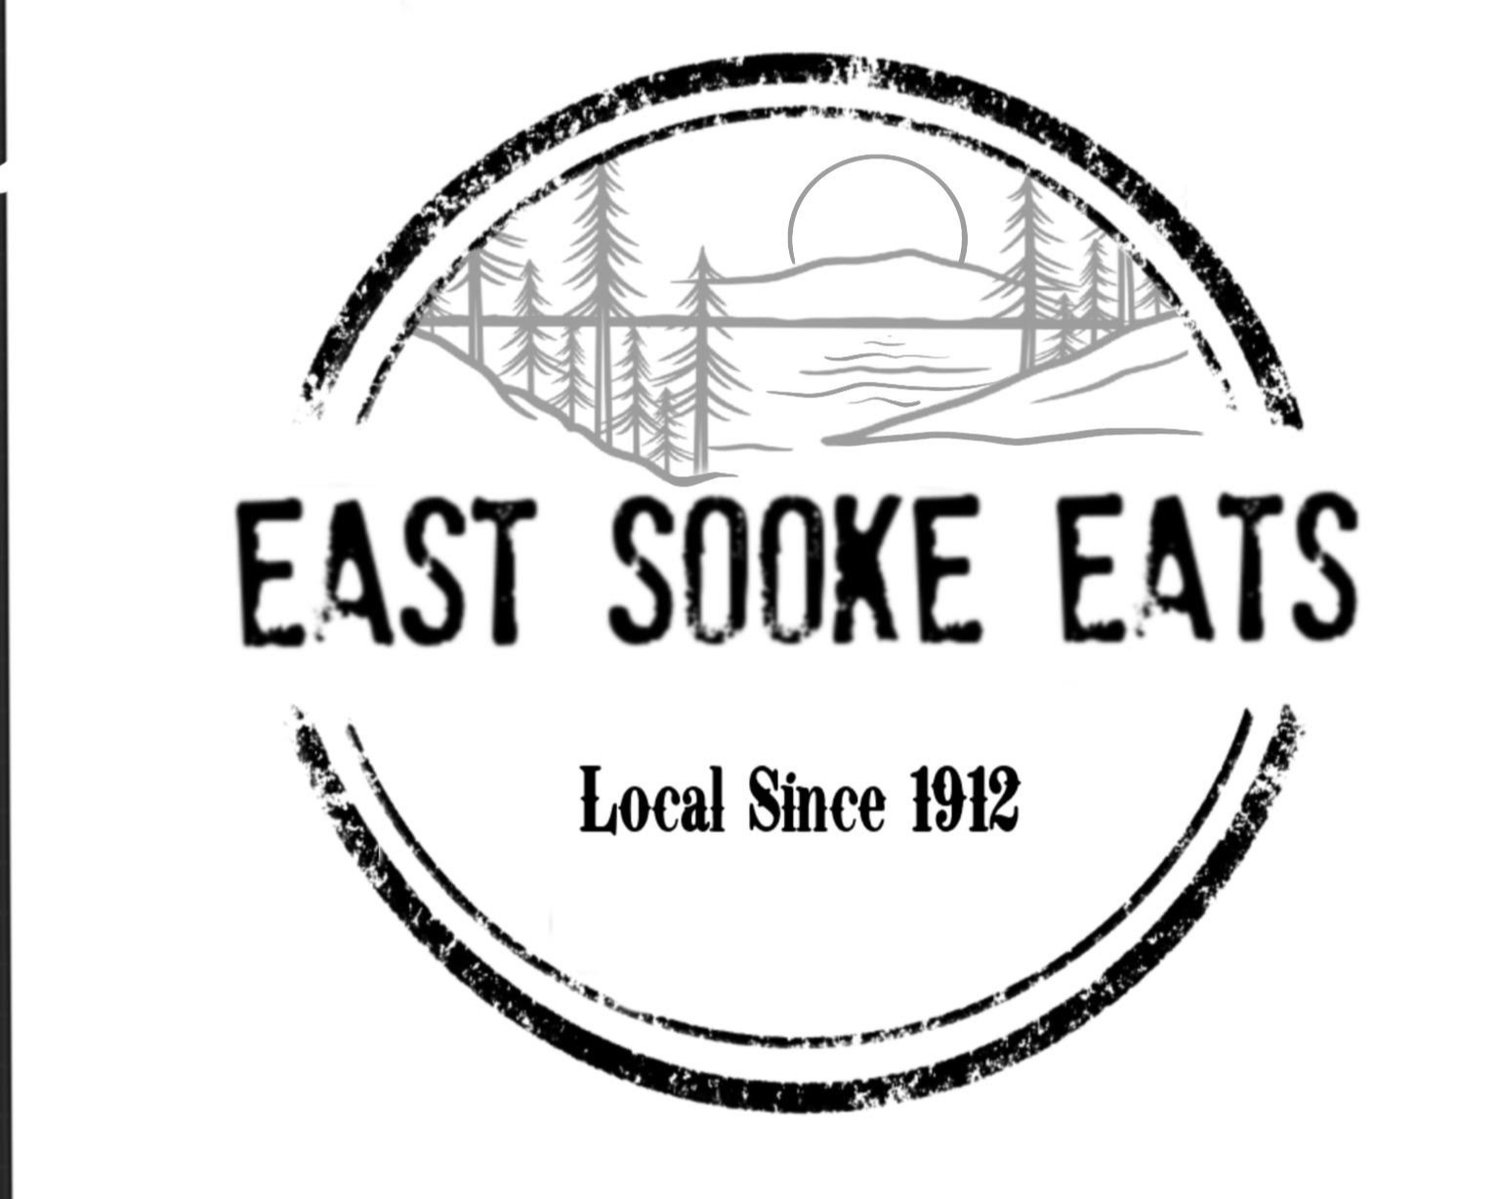 East Sooke Eats